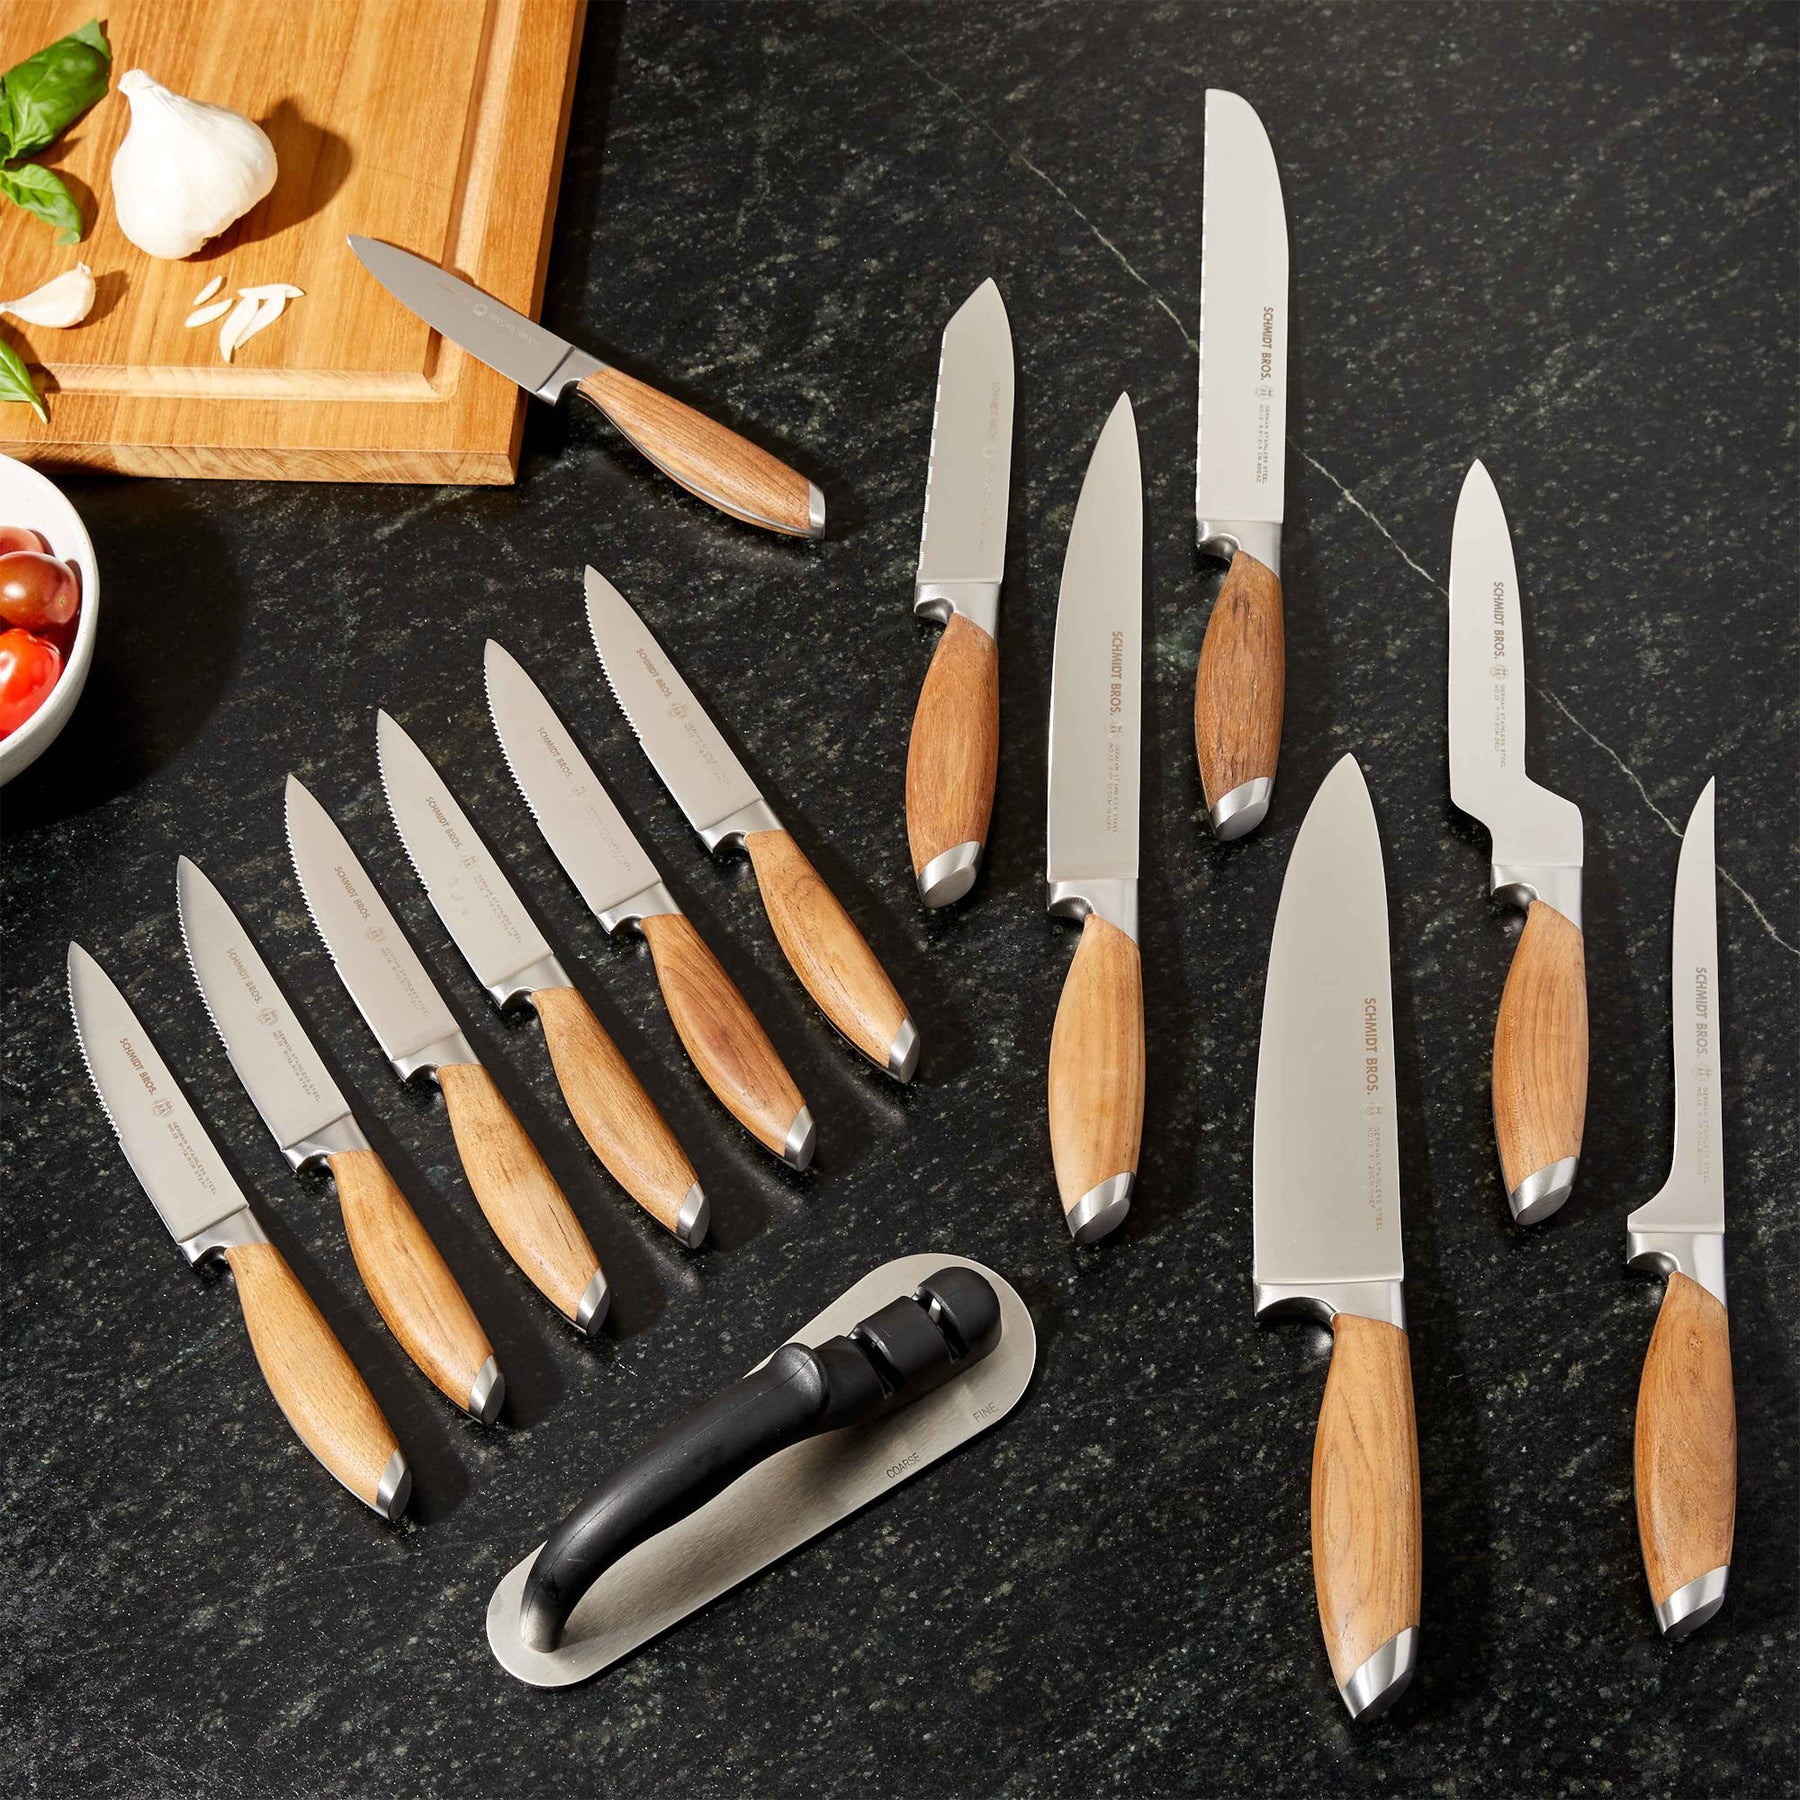  BRODARK Knife Set for Kitchen with Block, 15-Piece